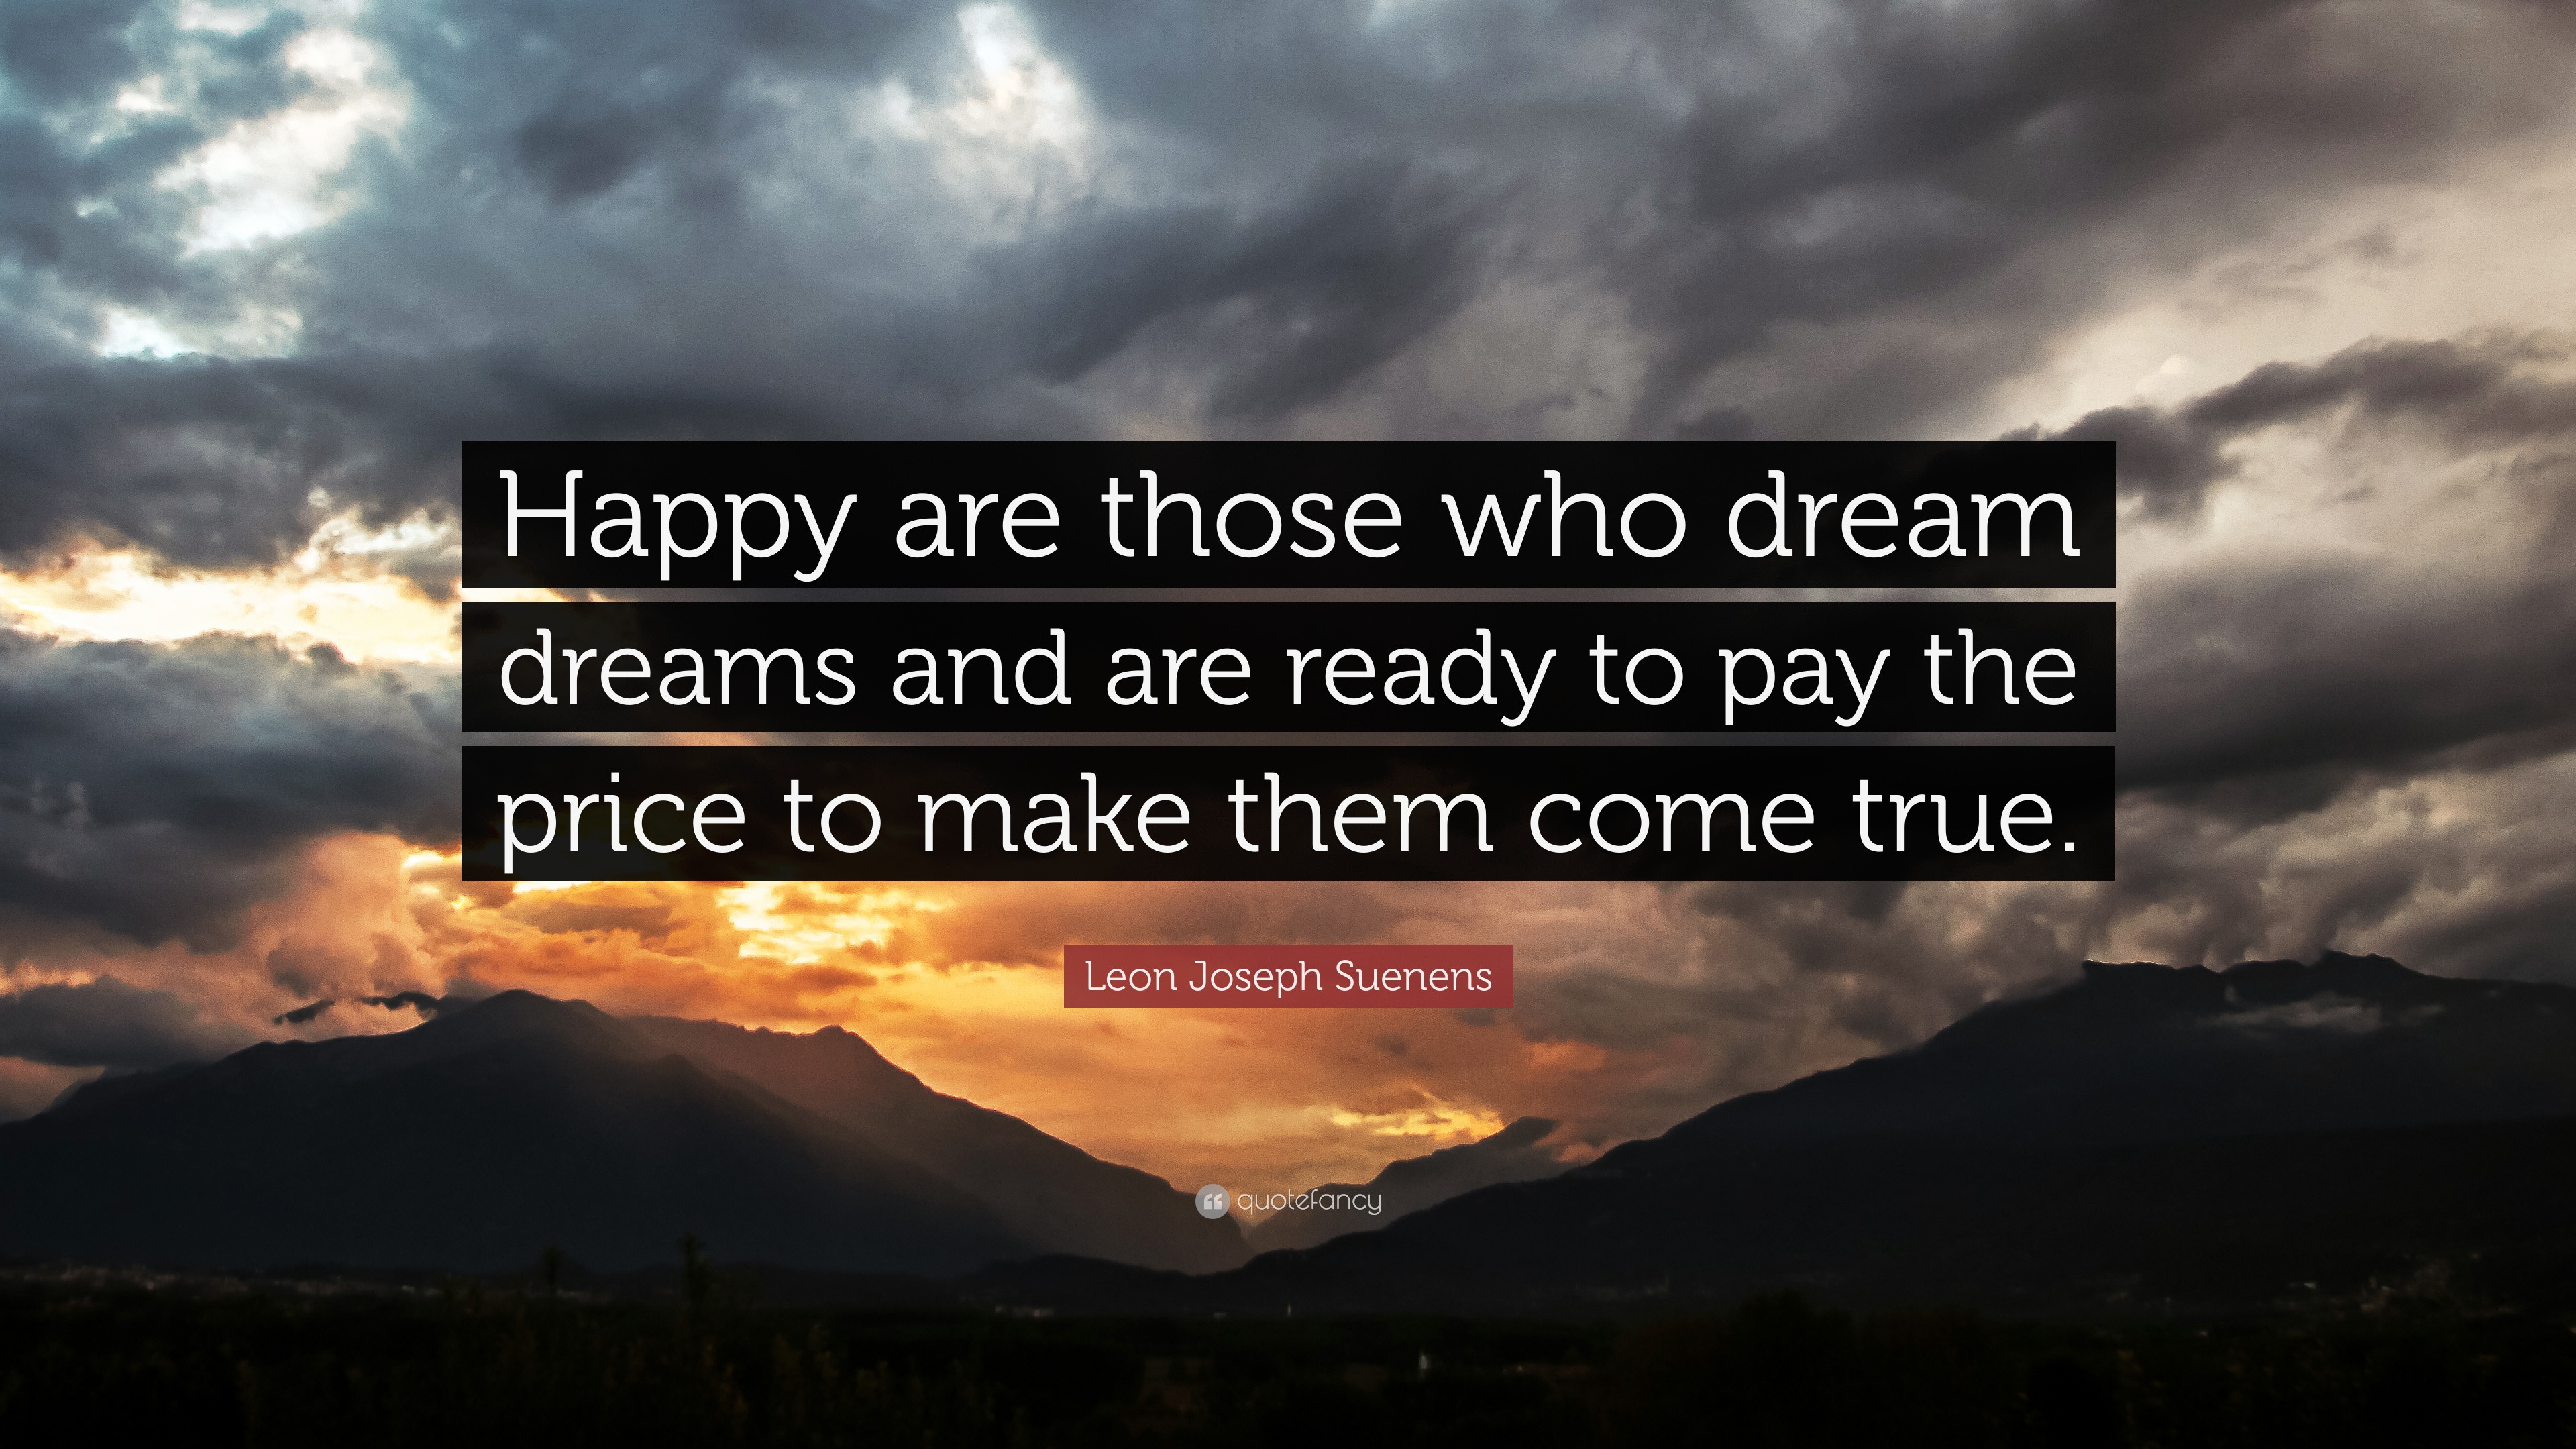 Leon Joseph Suenens Quote: “Happy are those who dream dreams and are ...
